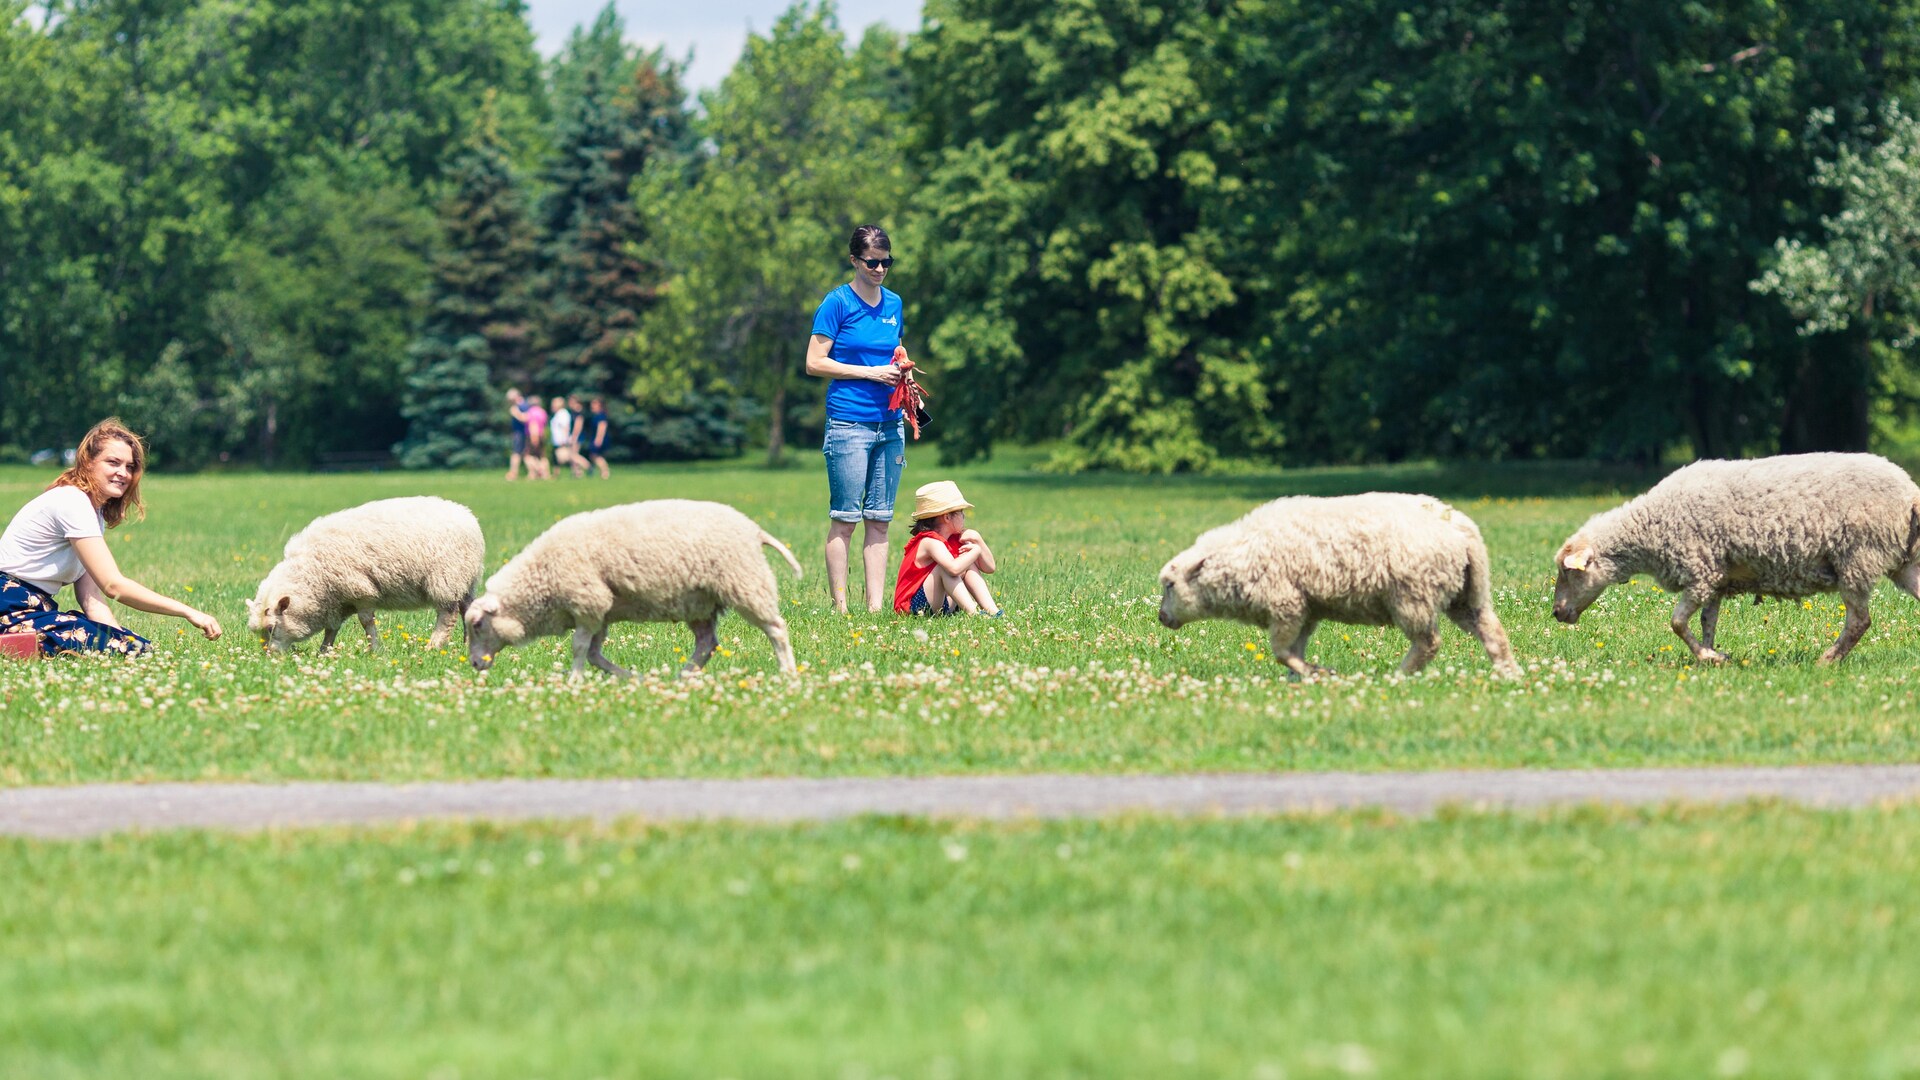 On voit plusieurs moutons gambader près d'une maman et de sa fille au parc